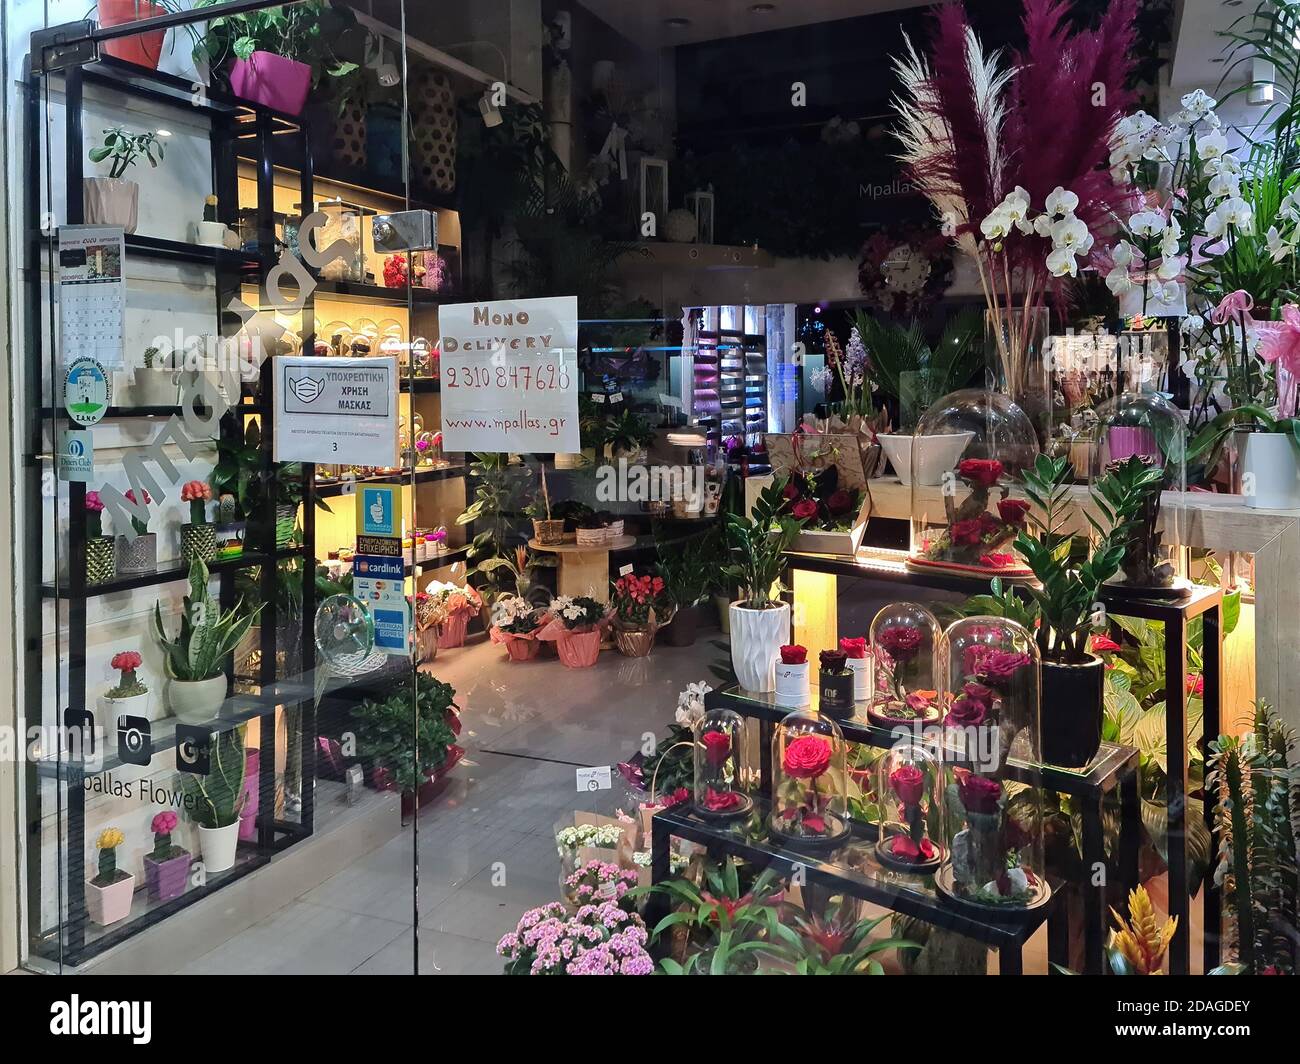 Thessaloniki, Griechenland - 9. November 2020: Hellenic geschlossen Blumen Schaufenster. Beleuchtete Nachtansicht von dekorierten Laden mit Lieferoption nur, aufgrund covid-19 Maßnahmen. Stockfoto